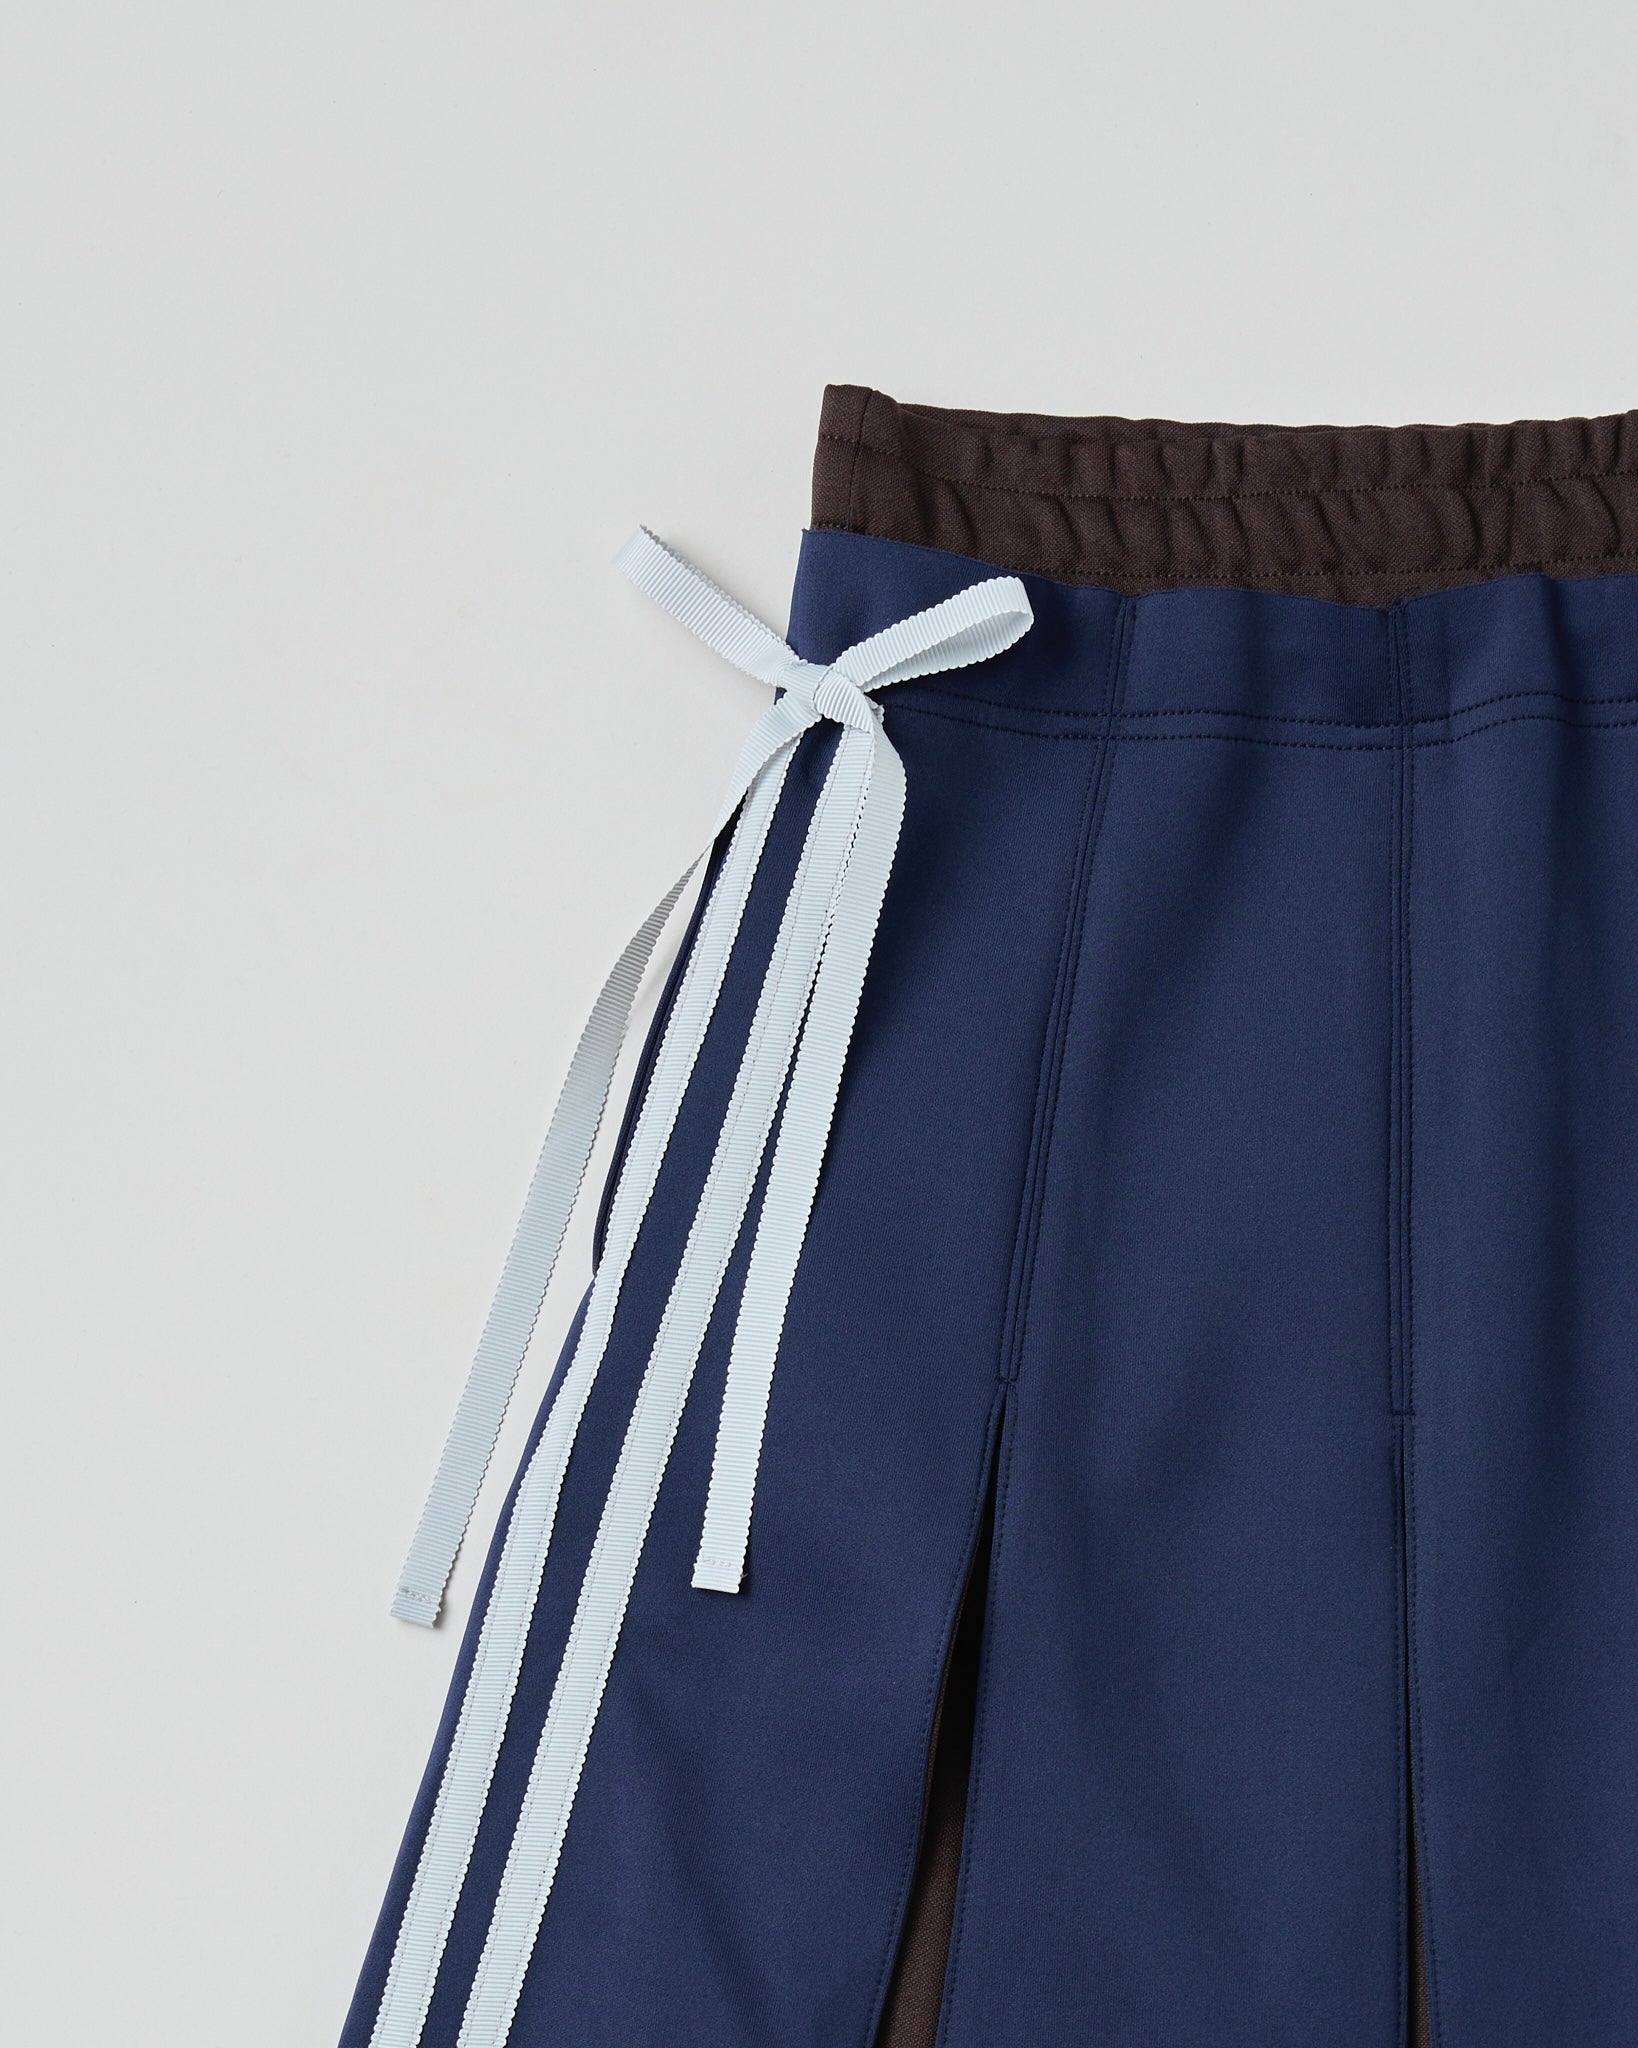 Layered waist jersey skirt (navy)